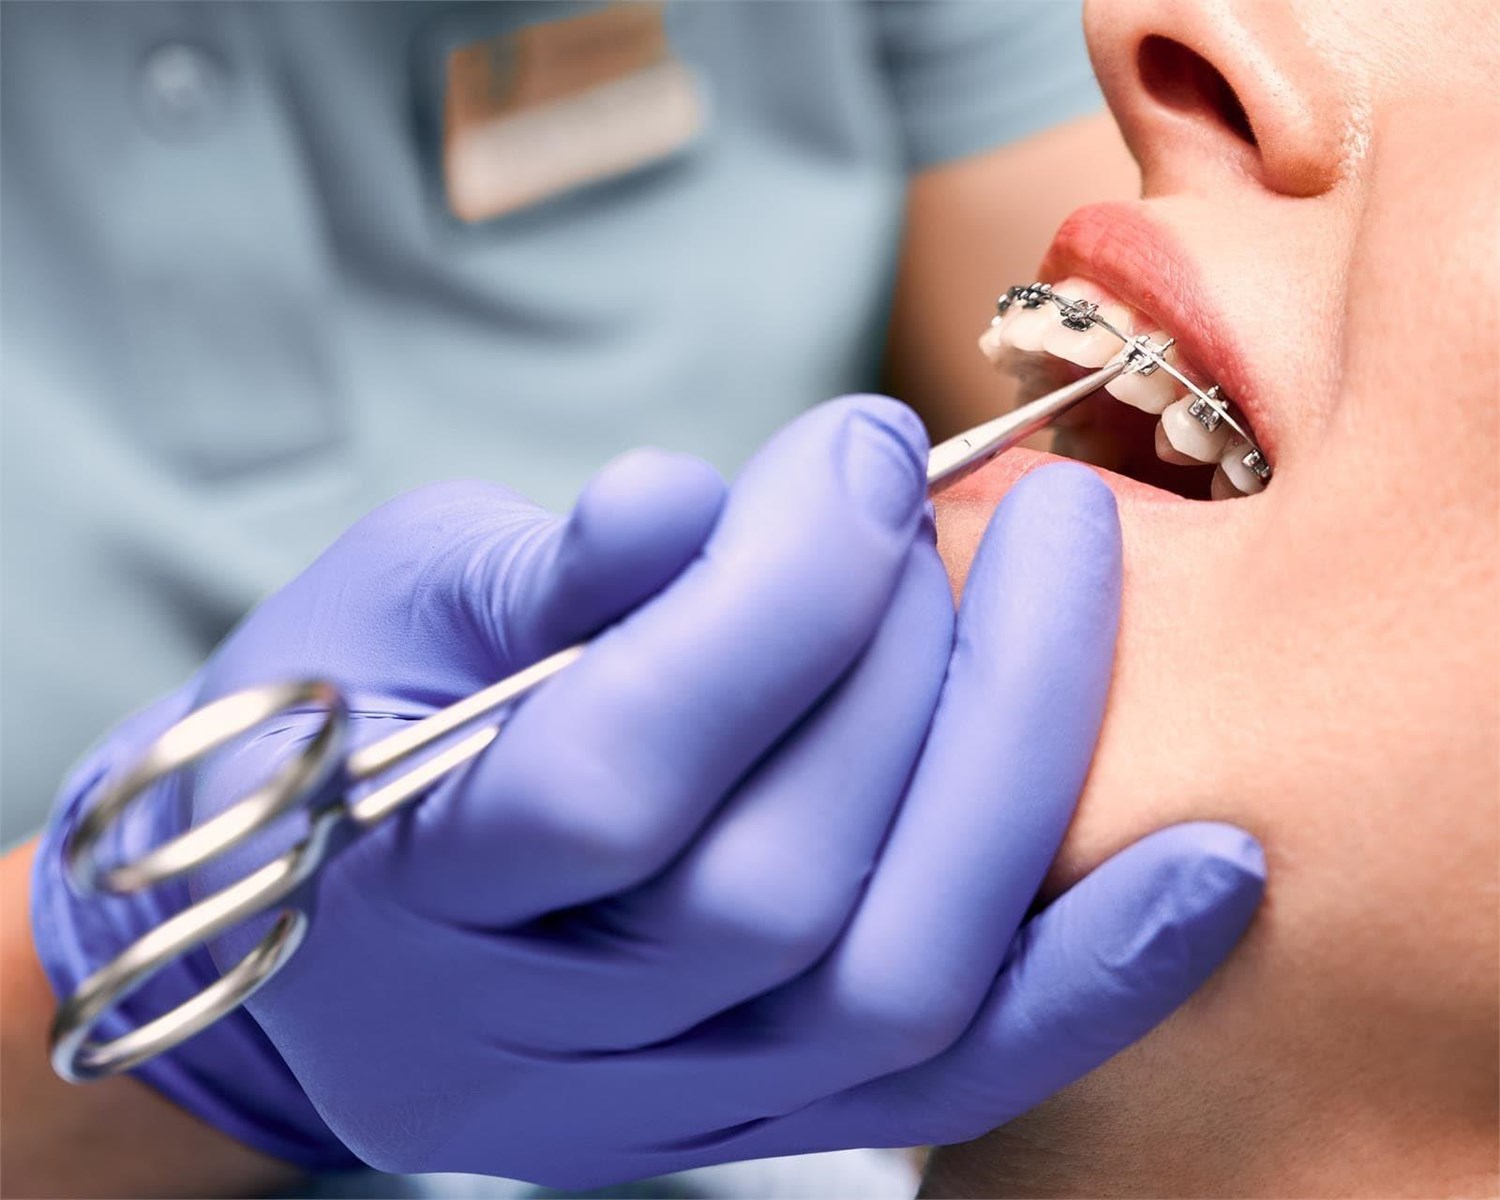 ¿Cómo saber que necesitas un tratamiento de ortodoncia?